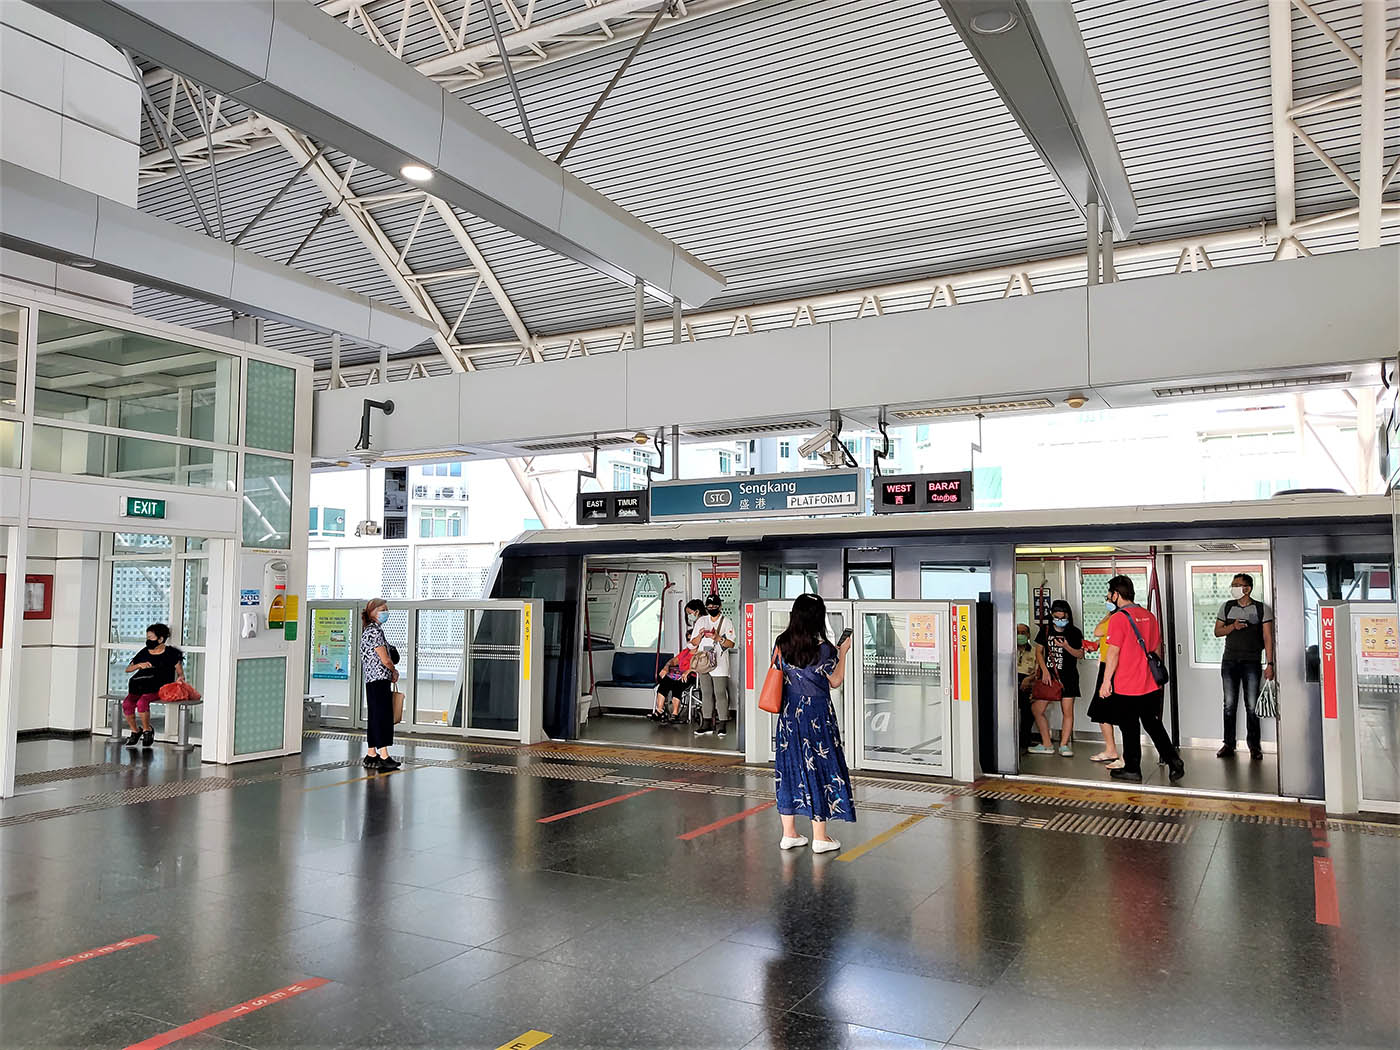 Sengkang MRT Station - - STC LRT Platform